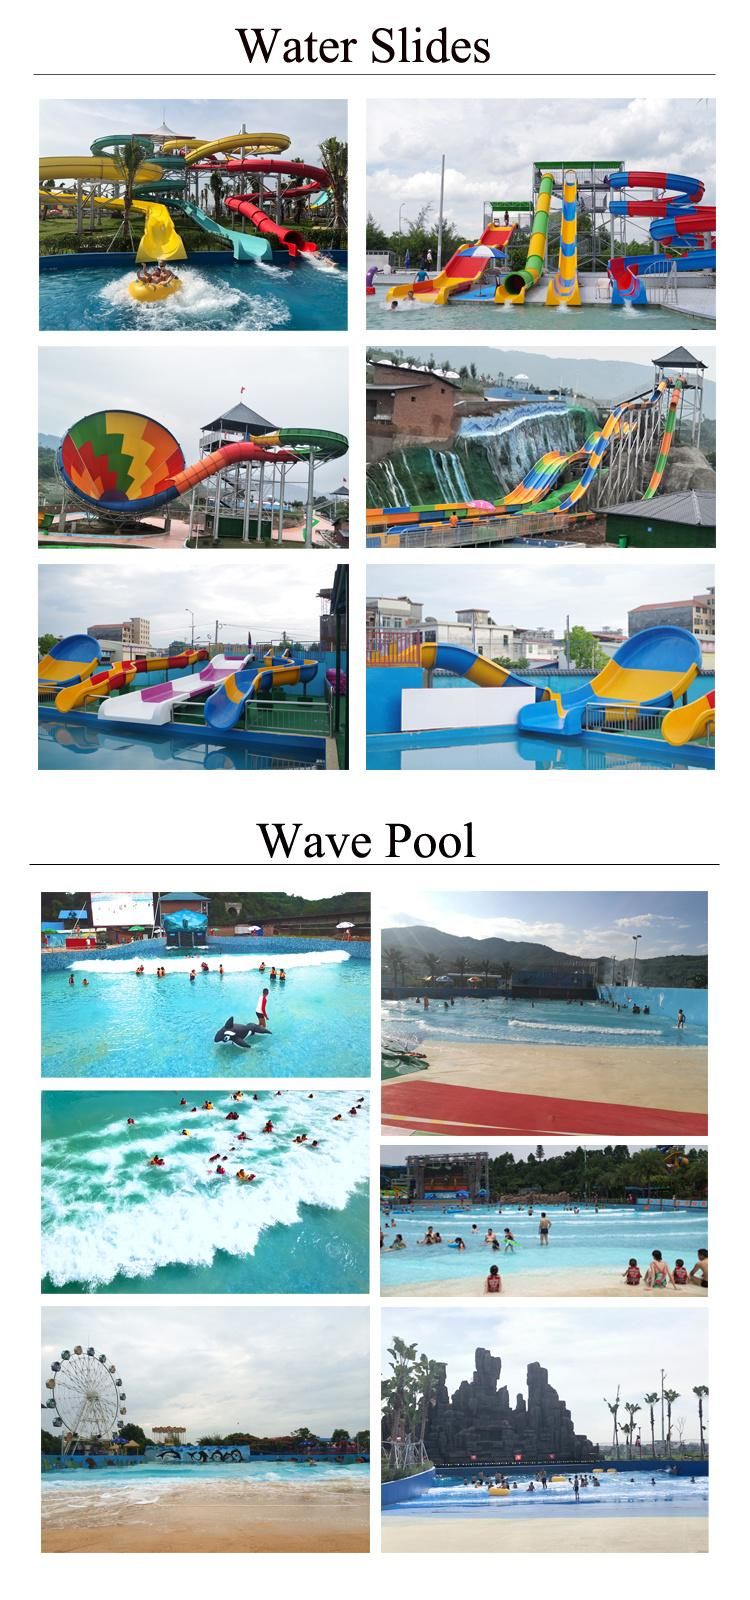 Tornado Water Slide for Aqua Amusement Park Swimming Pool